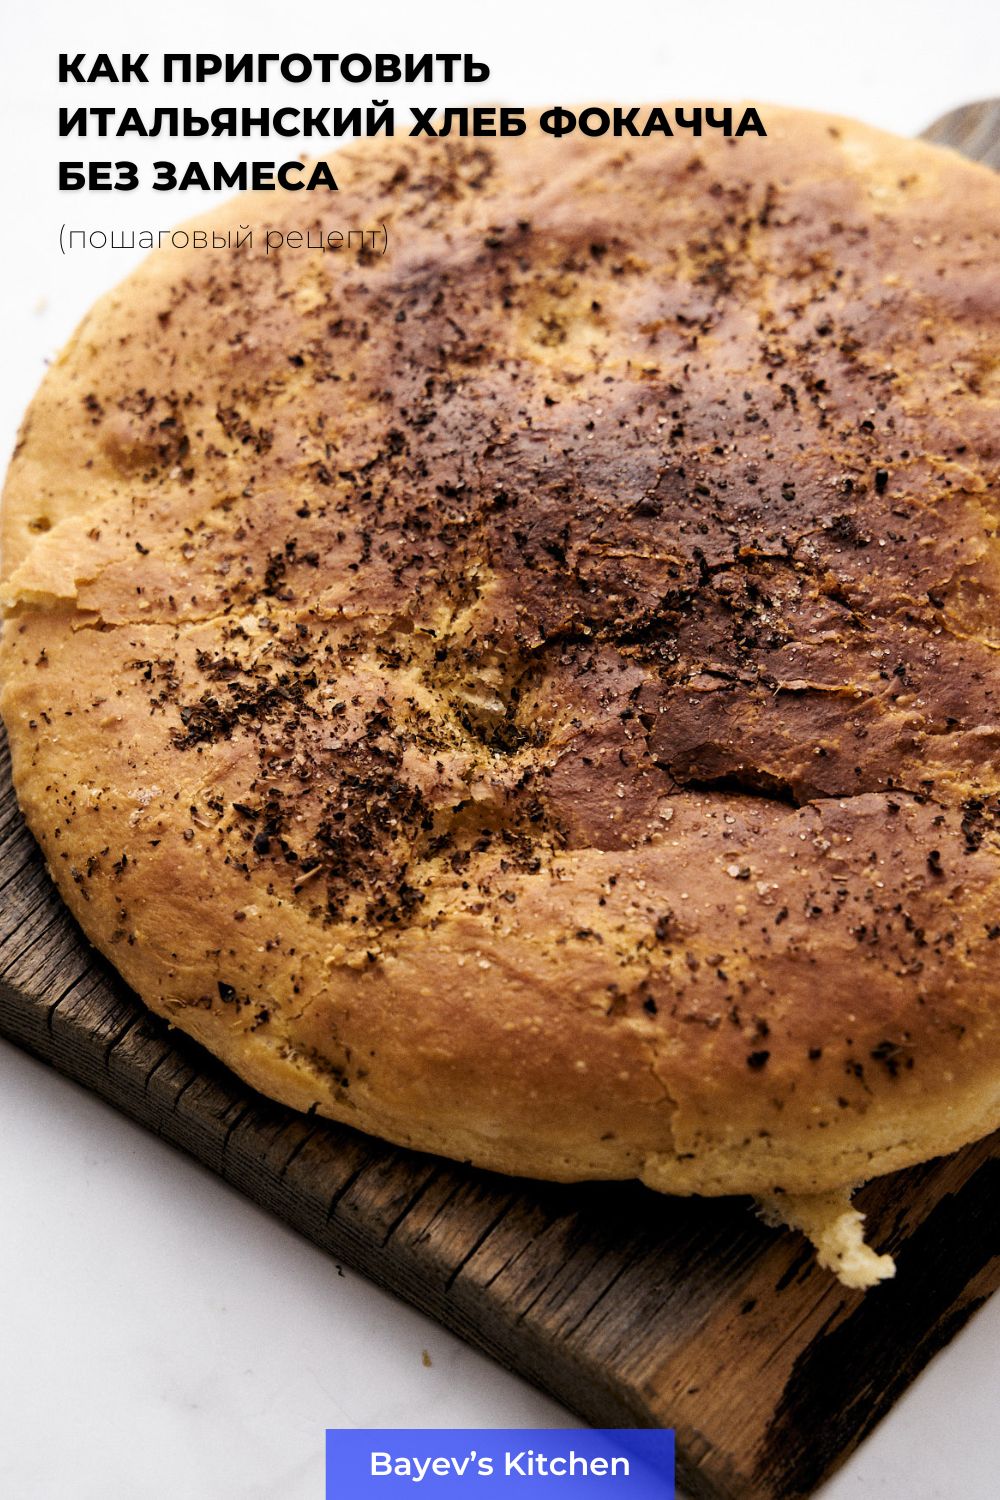 Как приготовить итальянский хлеб Фокачча без замеса. Рецепт с пошаговыми инструкциями и пояснениями